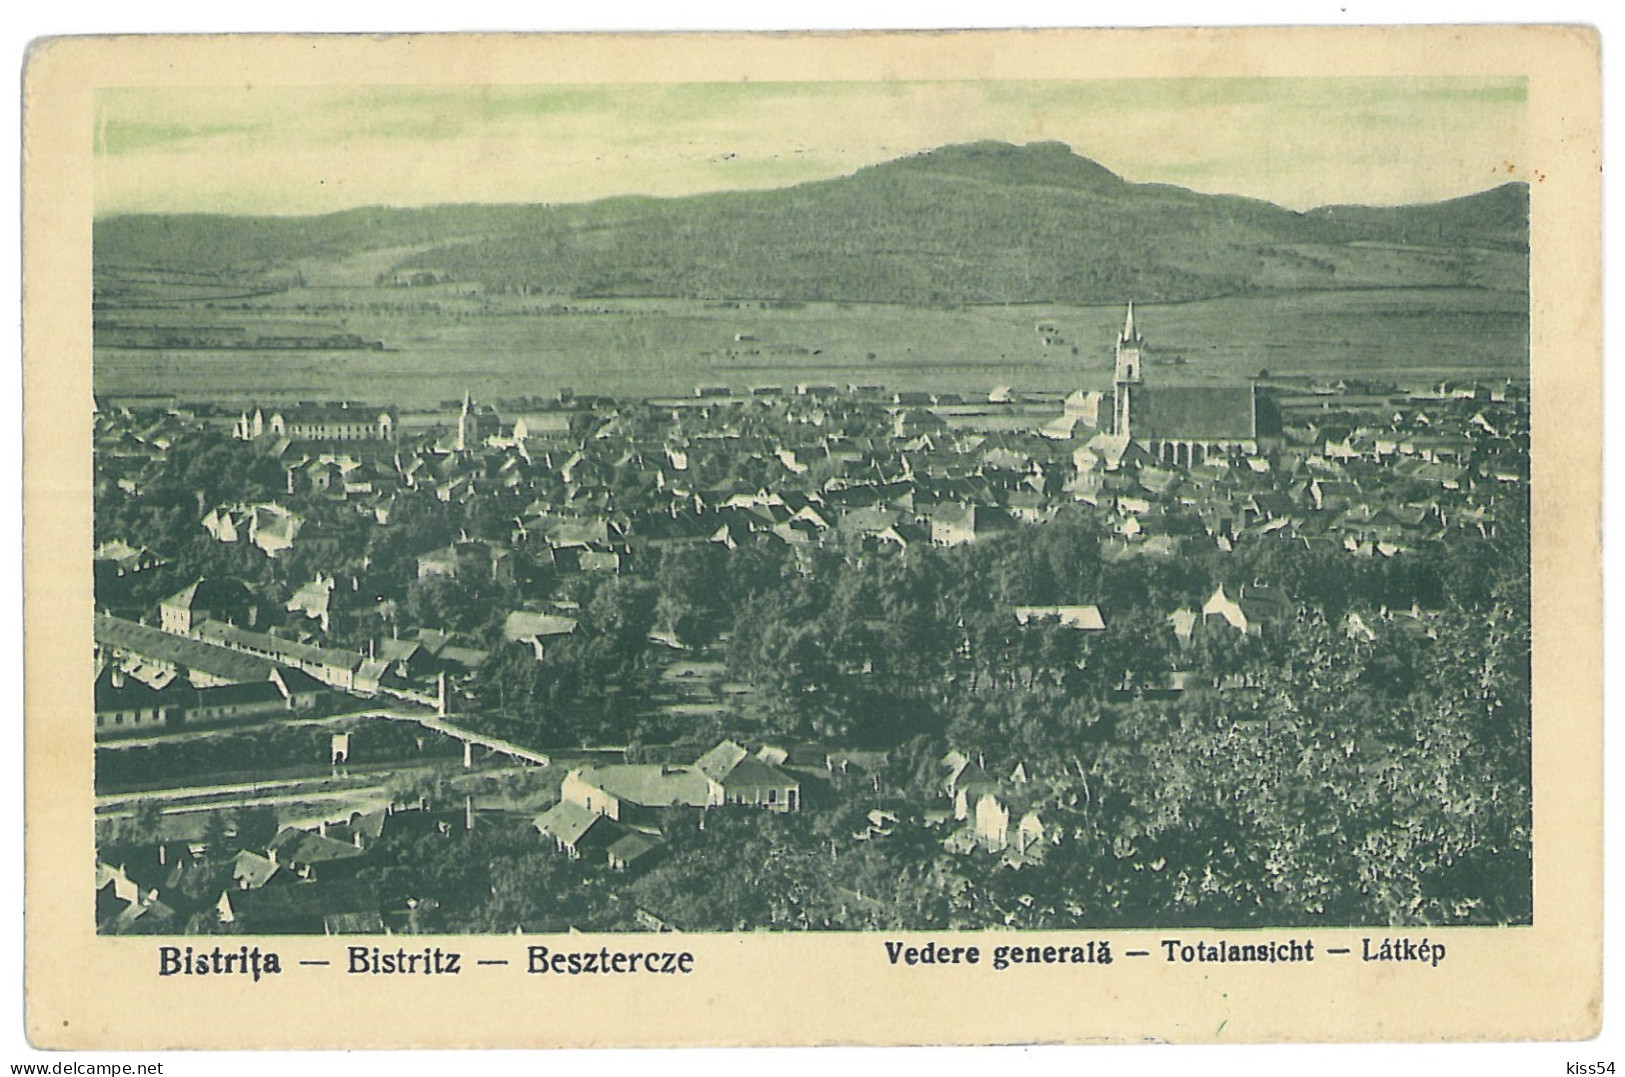 RO 89 - 13548 BISTRITA, Panorama, Romania - Old Postcard - Used - 1931 - Roemenië